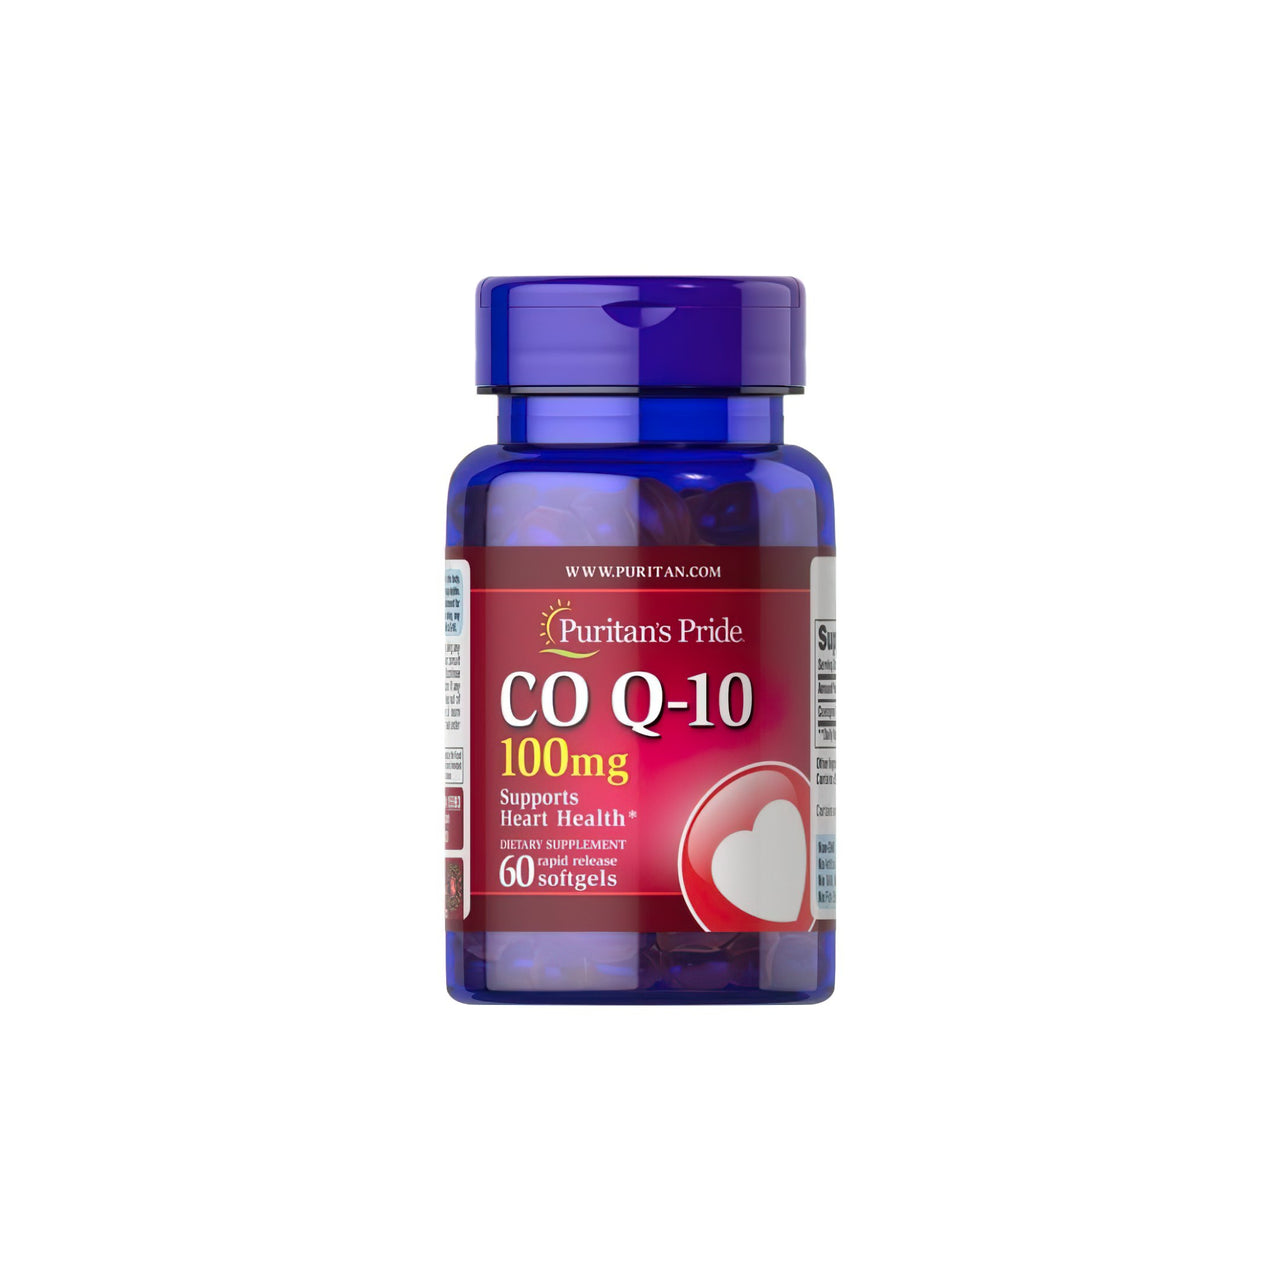 Un frasco de Q-SORB™ Co Q-10 100 mg 60 cápsulas blandas de liberación rápida de Puritan's Pride, un antioxidante, sobre fondo blanco.